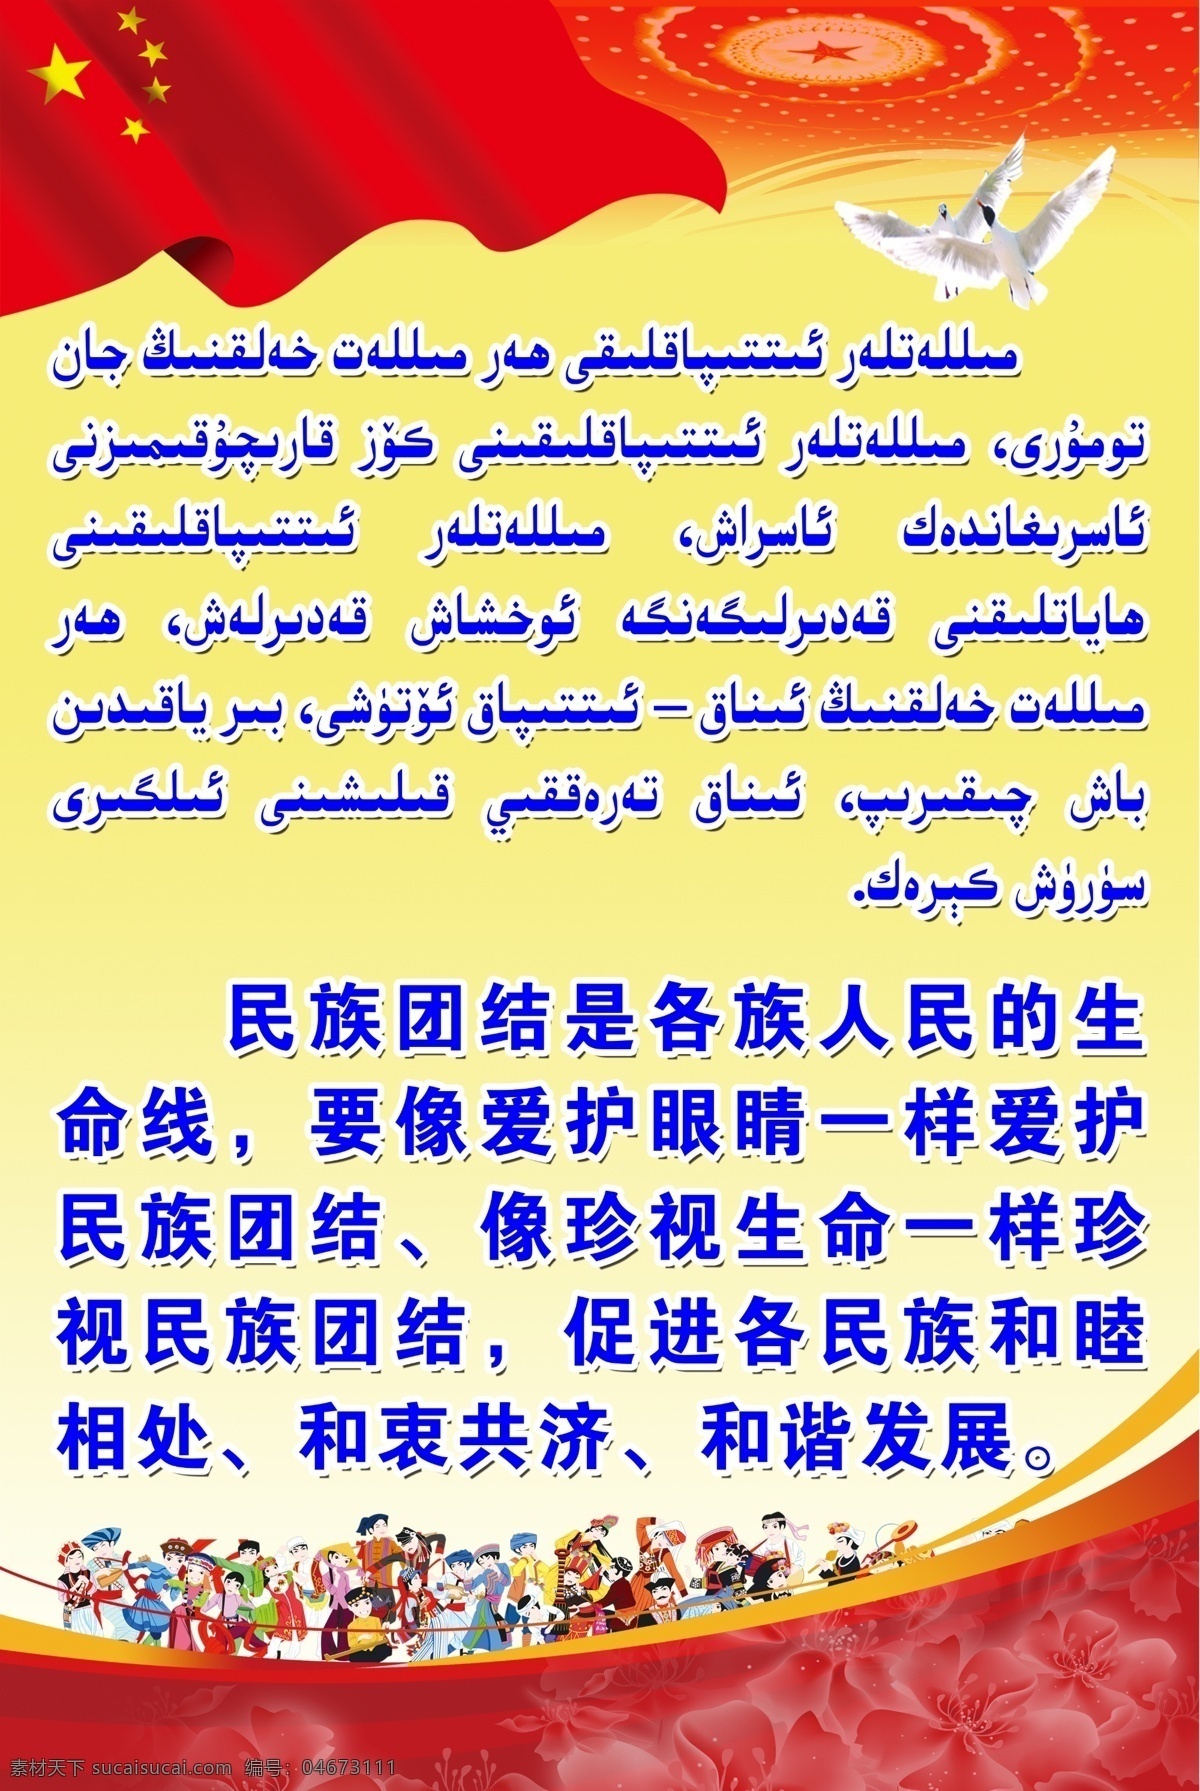 民族 团结 各族 人民 生命线 民族团结 新疆 维吾尔语 和谐发展 维语 分层